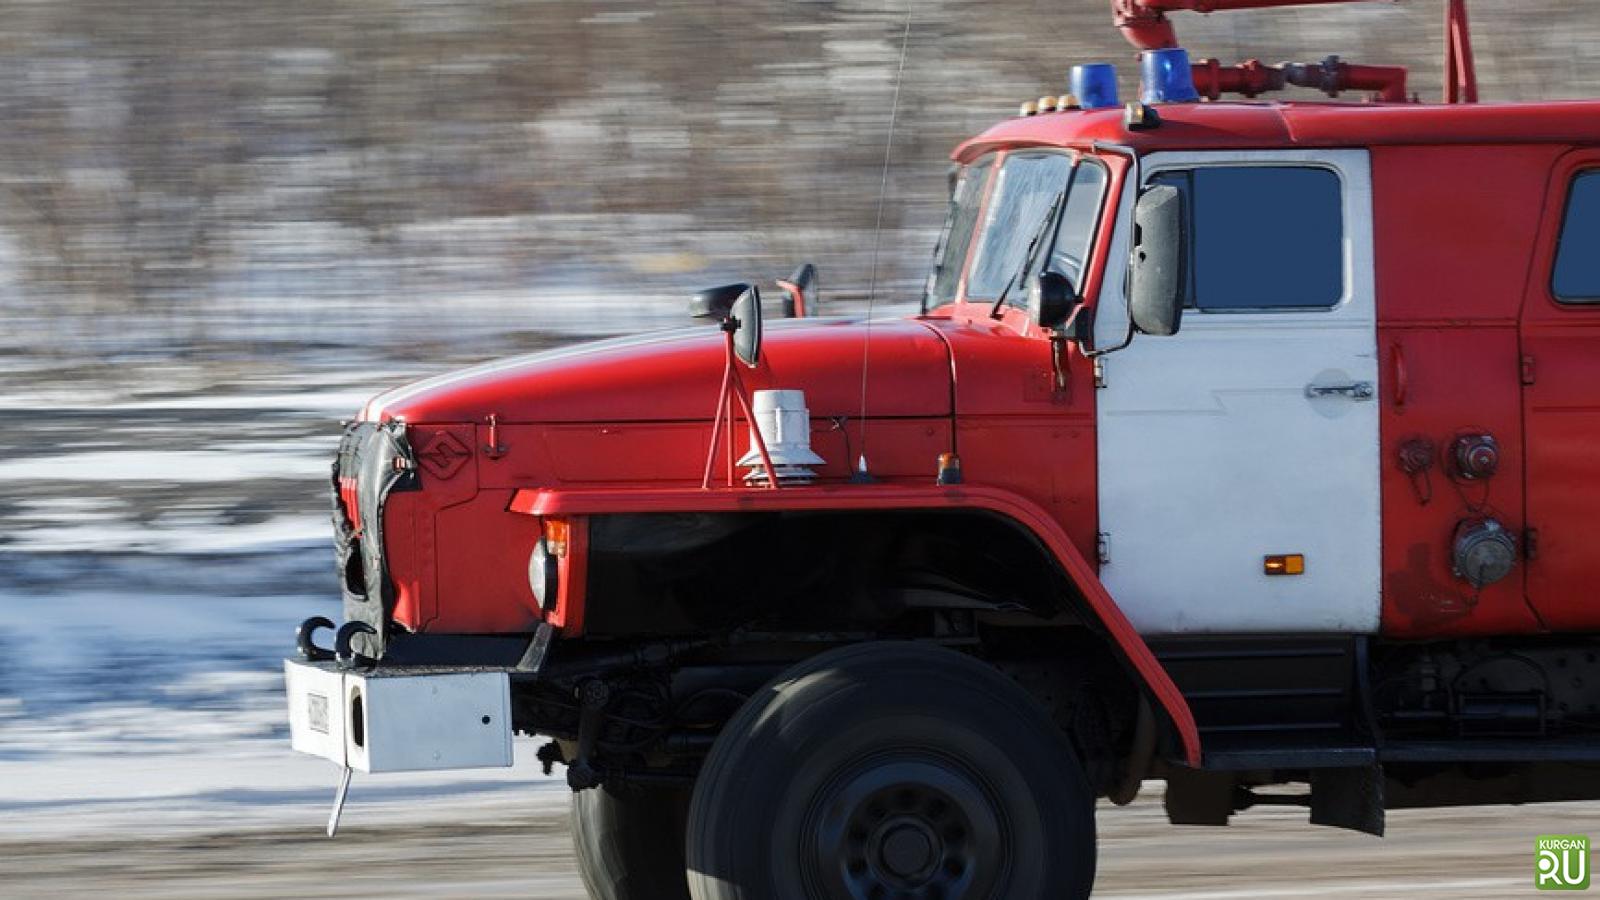 Посадка пожарных в автомобиль. Пожарная машина Урал мигалки. Пожарный автомобиль проблесковый Маяк. Пожарная машина зима. Пожарные едут.